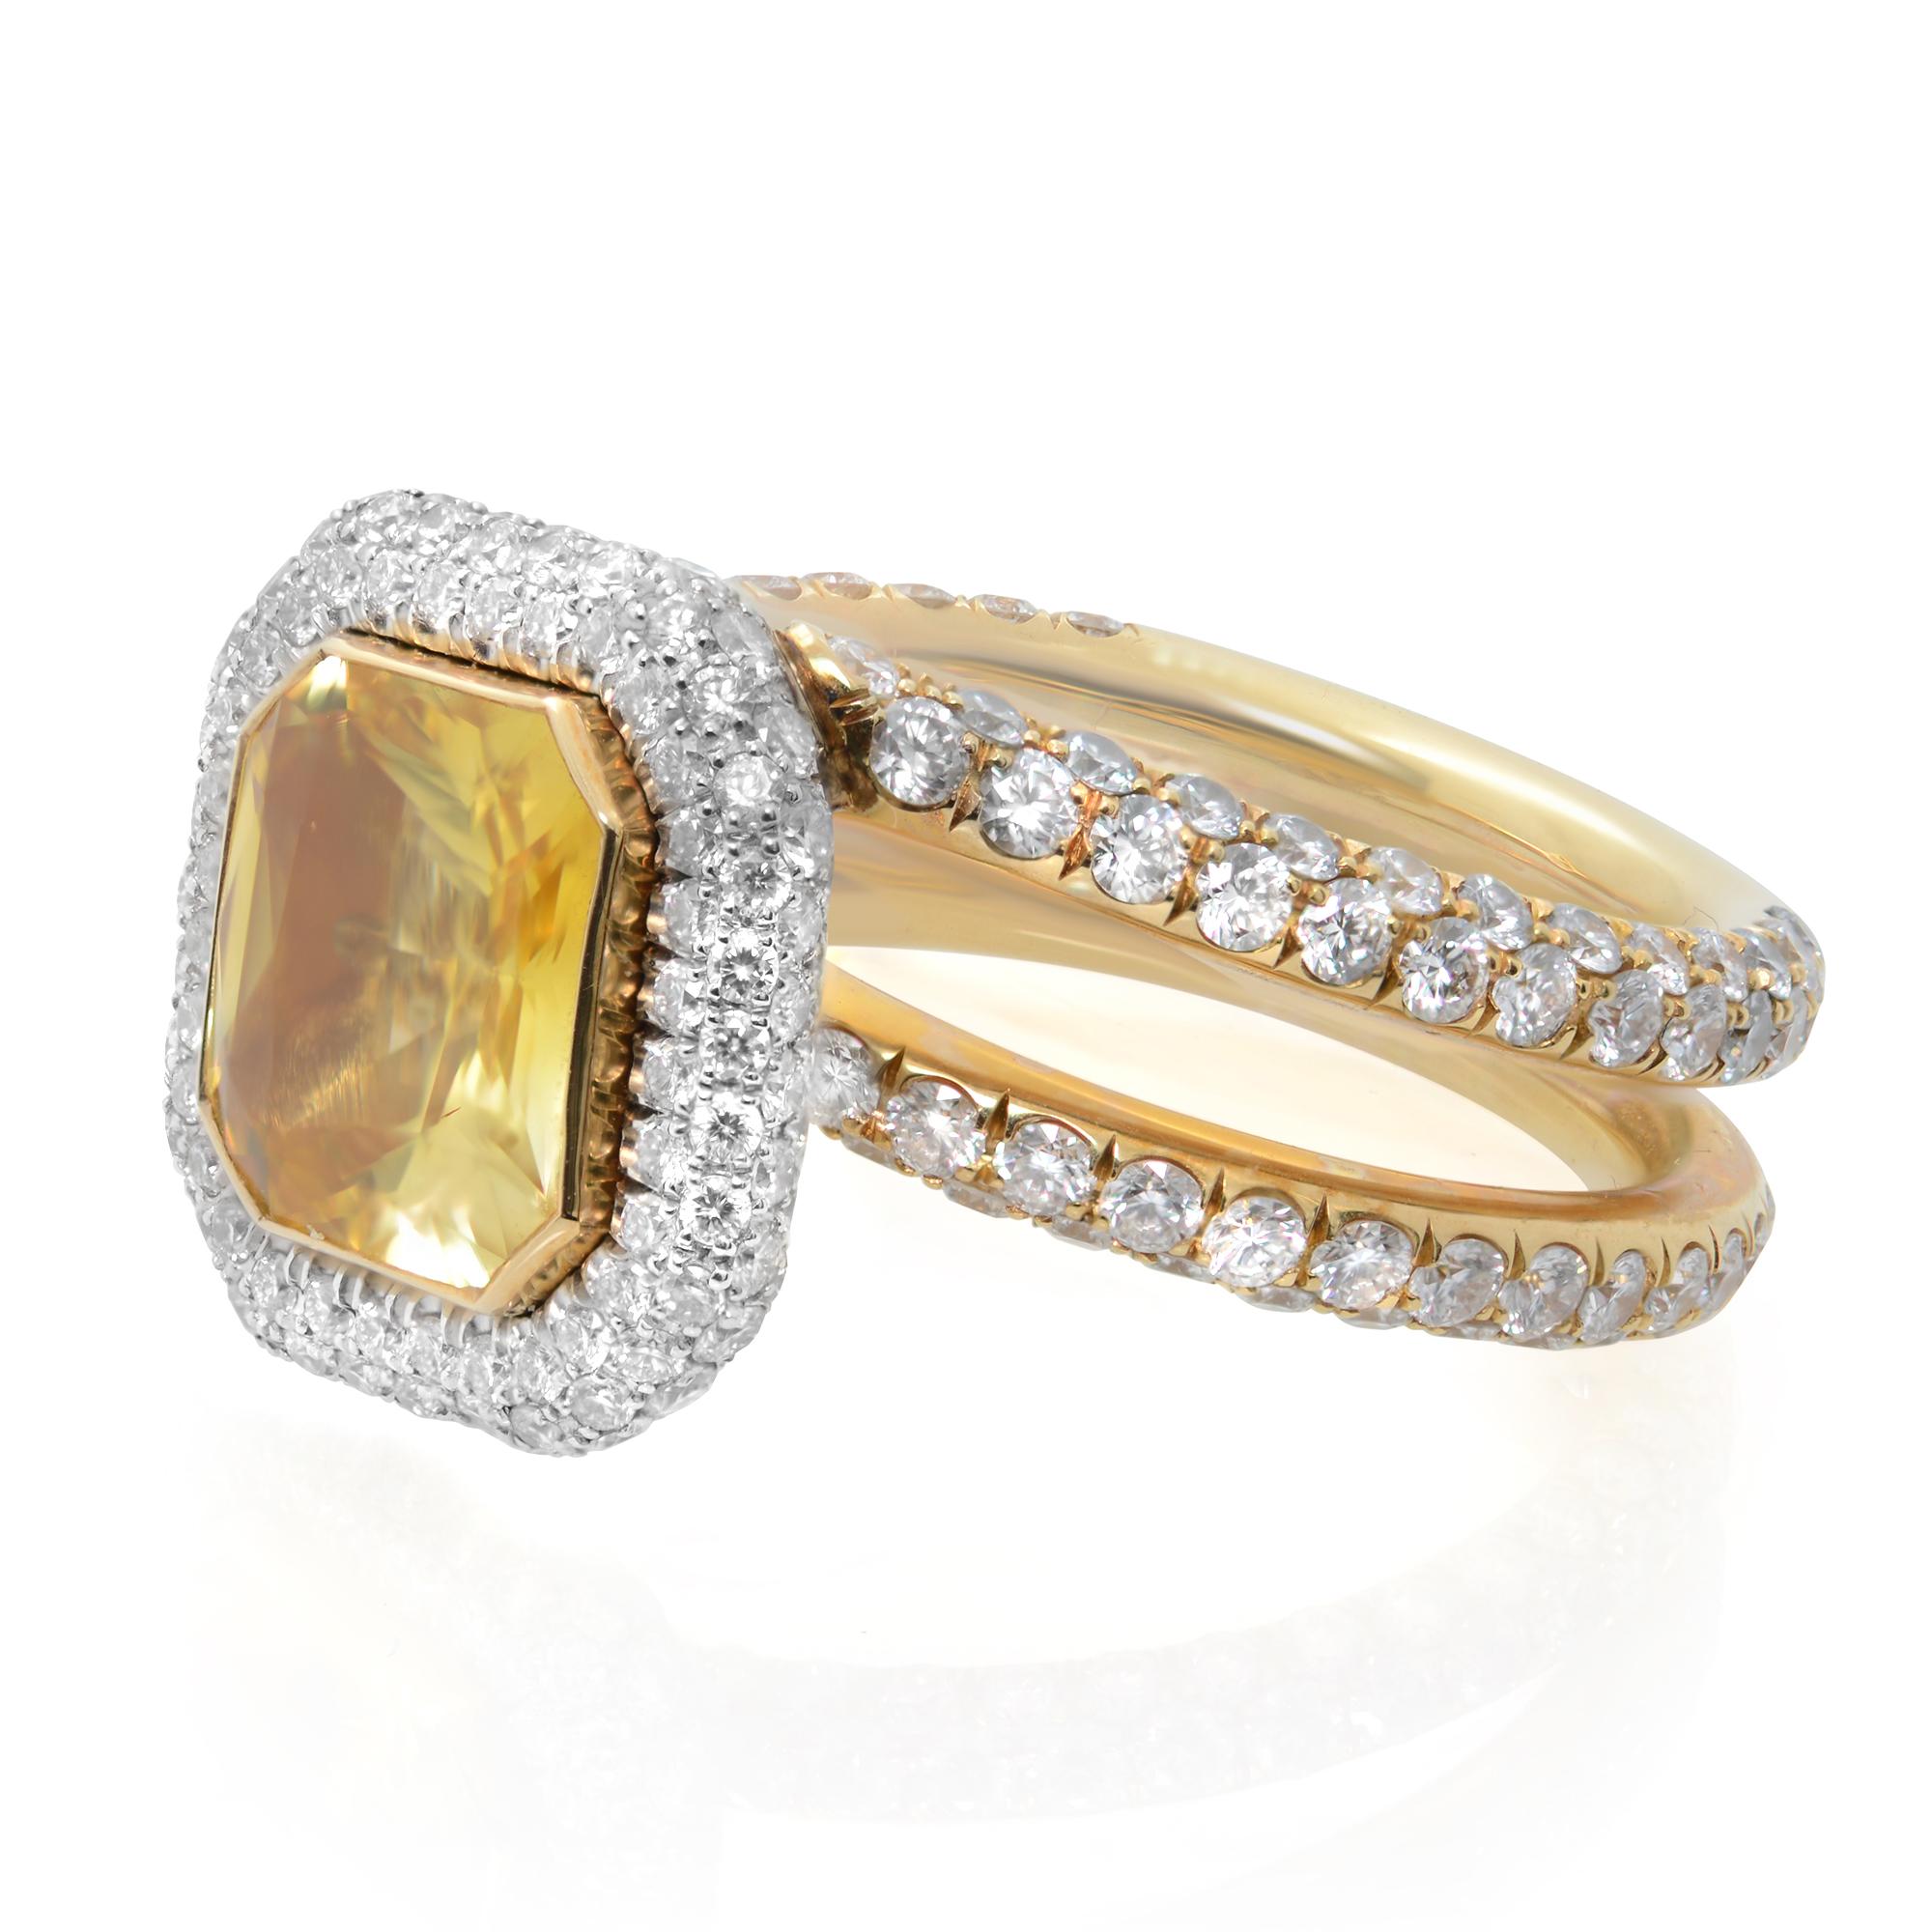 Dies ist eine wunderschöne handgefertigte benutzerdefinierte natürlichen gelben Saphir und Diamant-Ring in 18K Gelbgold und Platin. Das Zentrum ist ein ausgefallener gelber Saphir mit Strahlenschliff und einem Gewicht von ca. 3,00 Karat. Ein